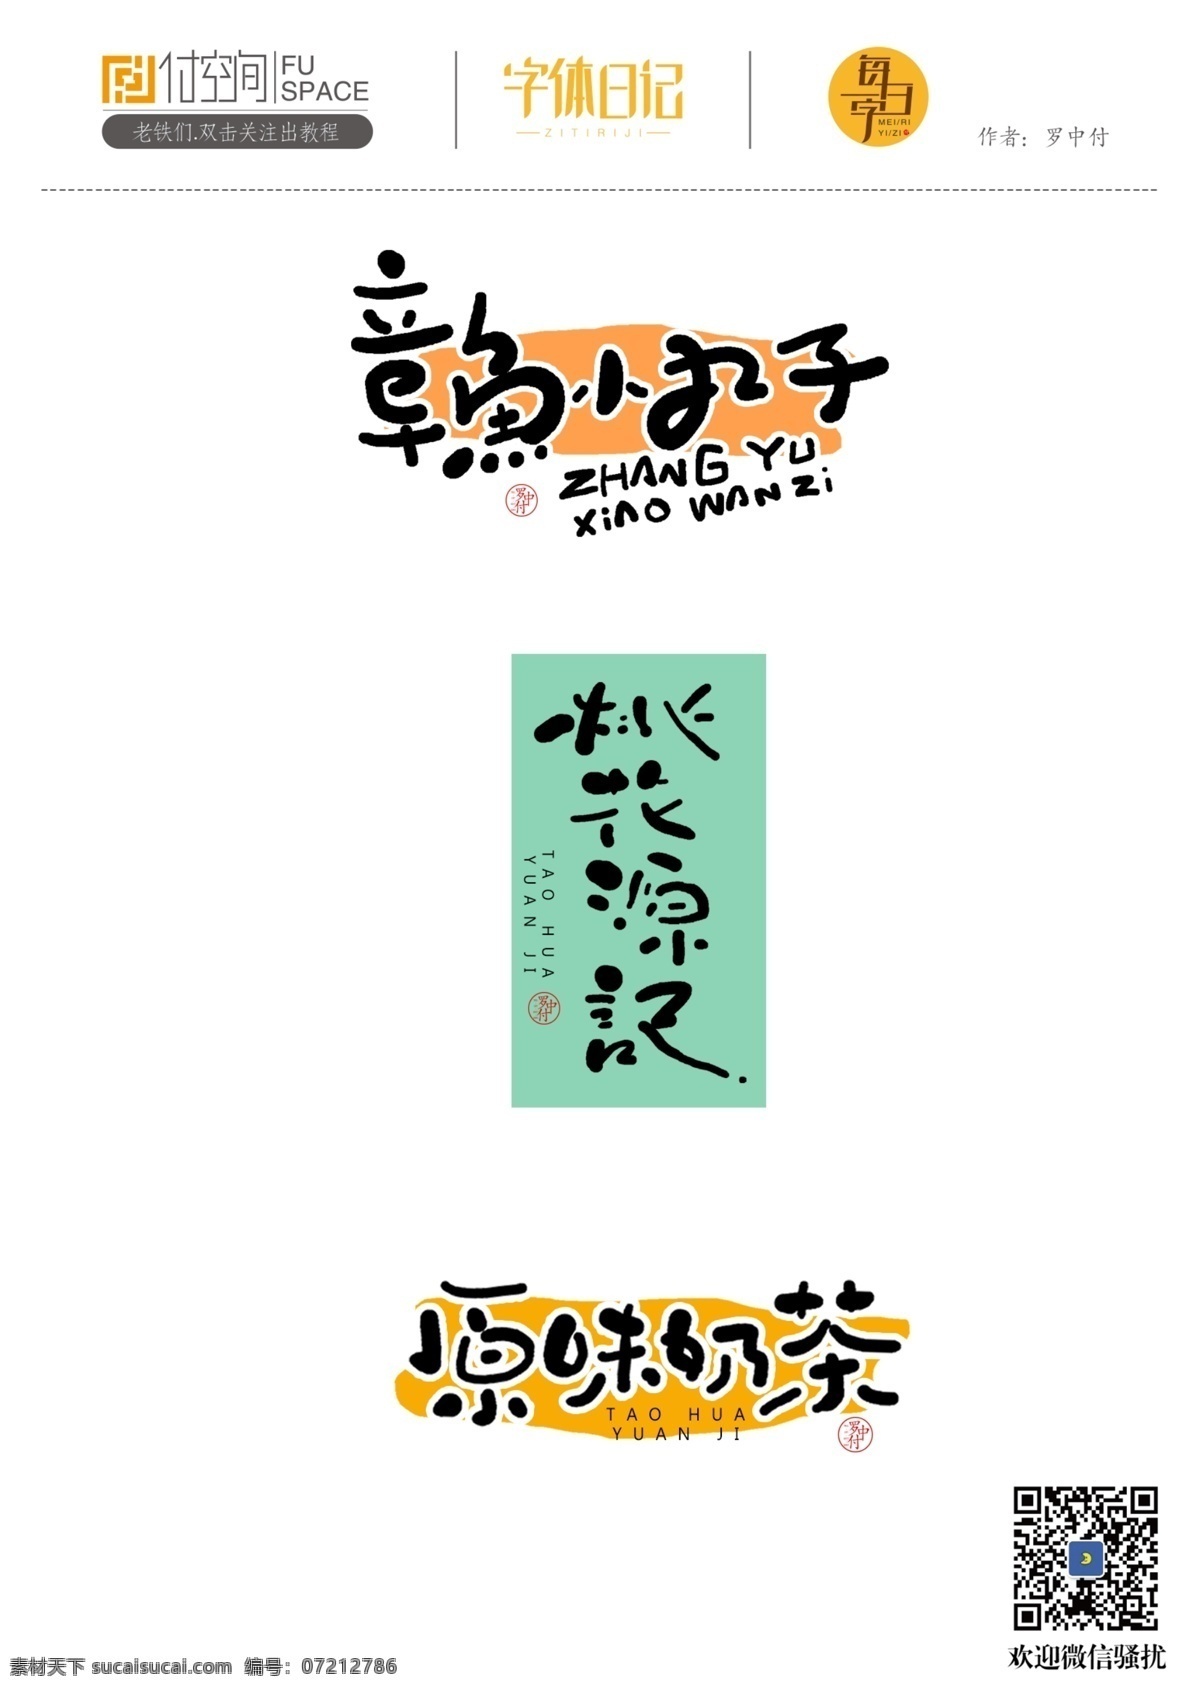 日式 小 清新 字体 手写字体设计 手写字体 日式风字体 书法字体 罗中付 罗中付设计 罗中付字体 日式小清新 字体设计 logo设计